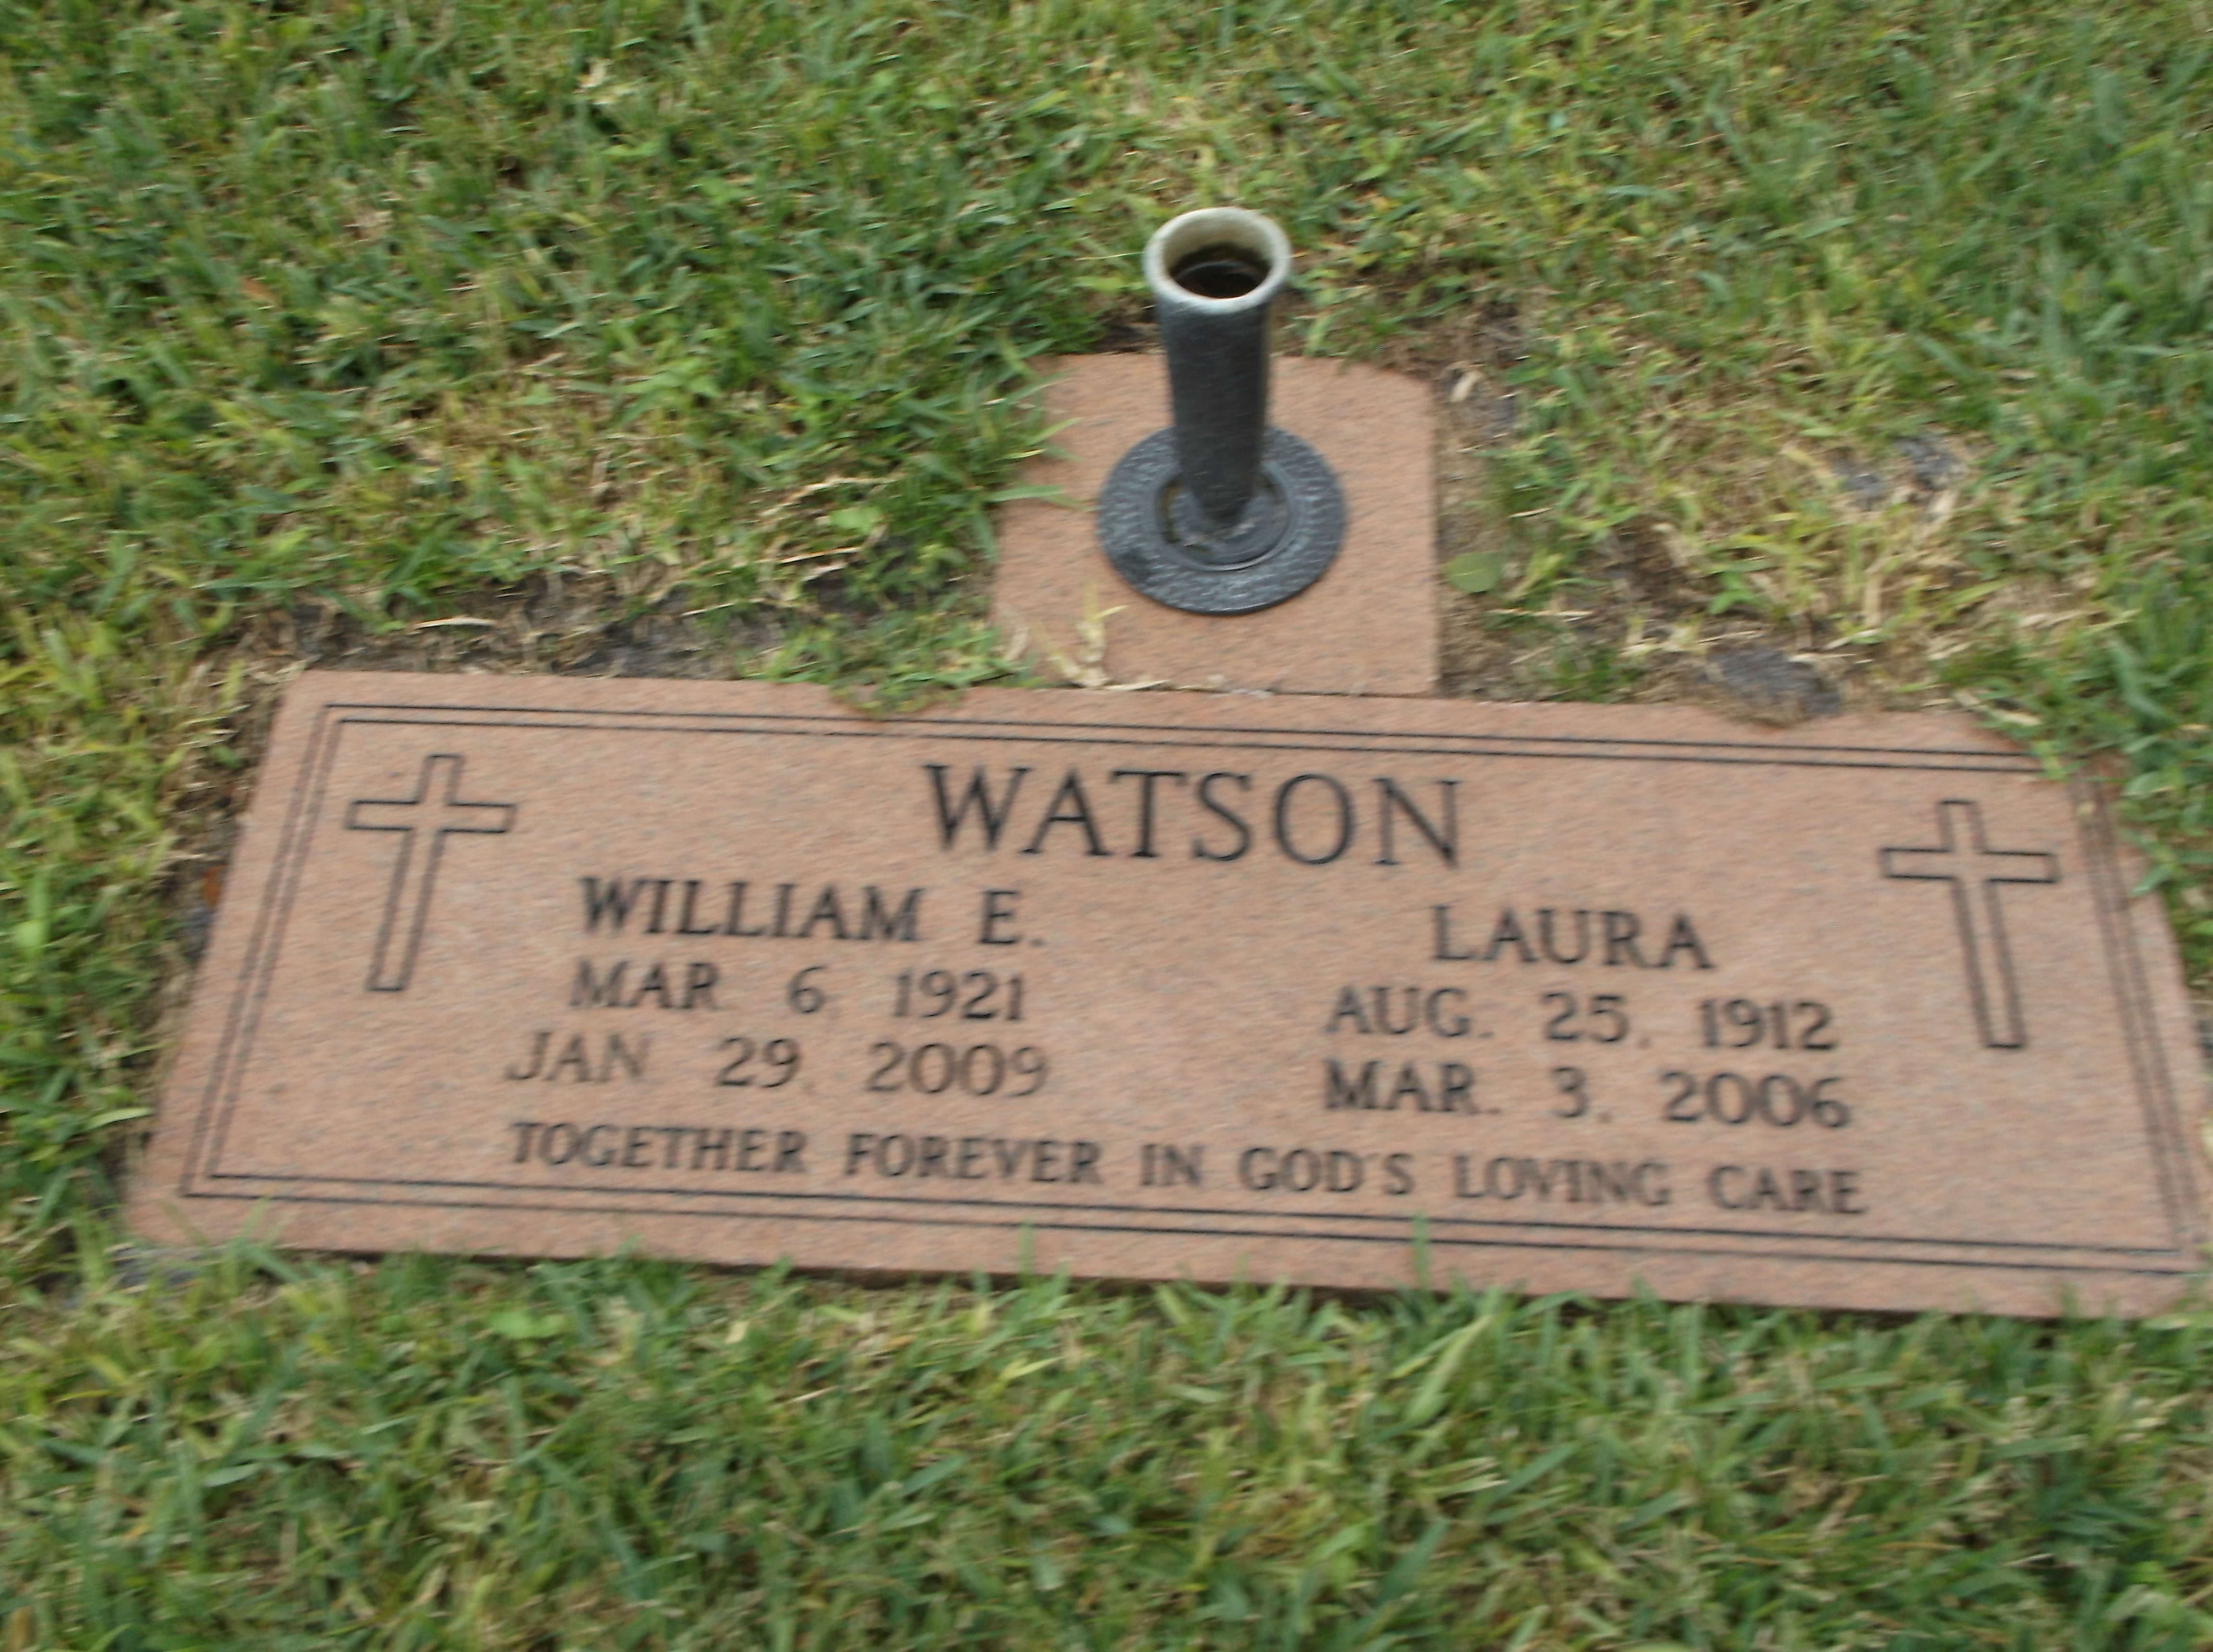 William E Watson